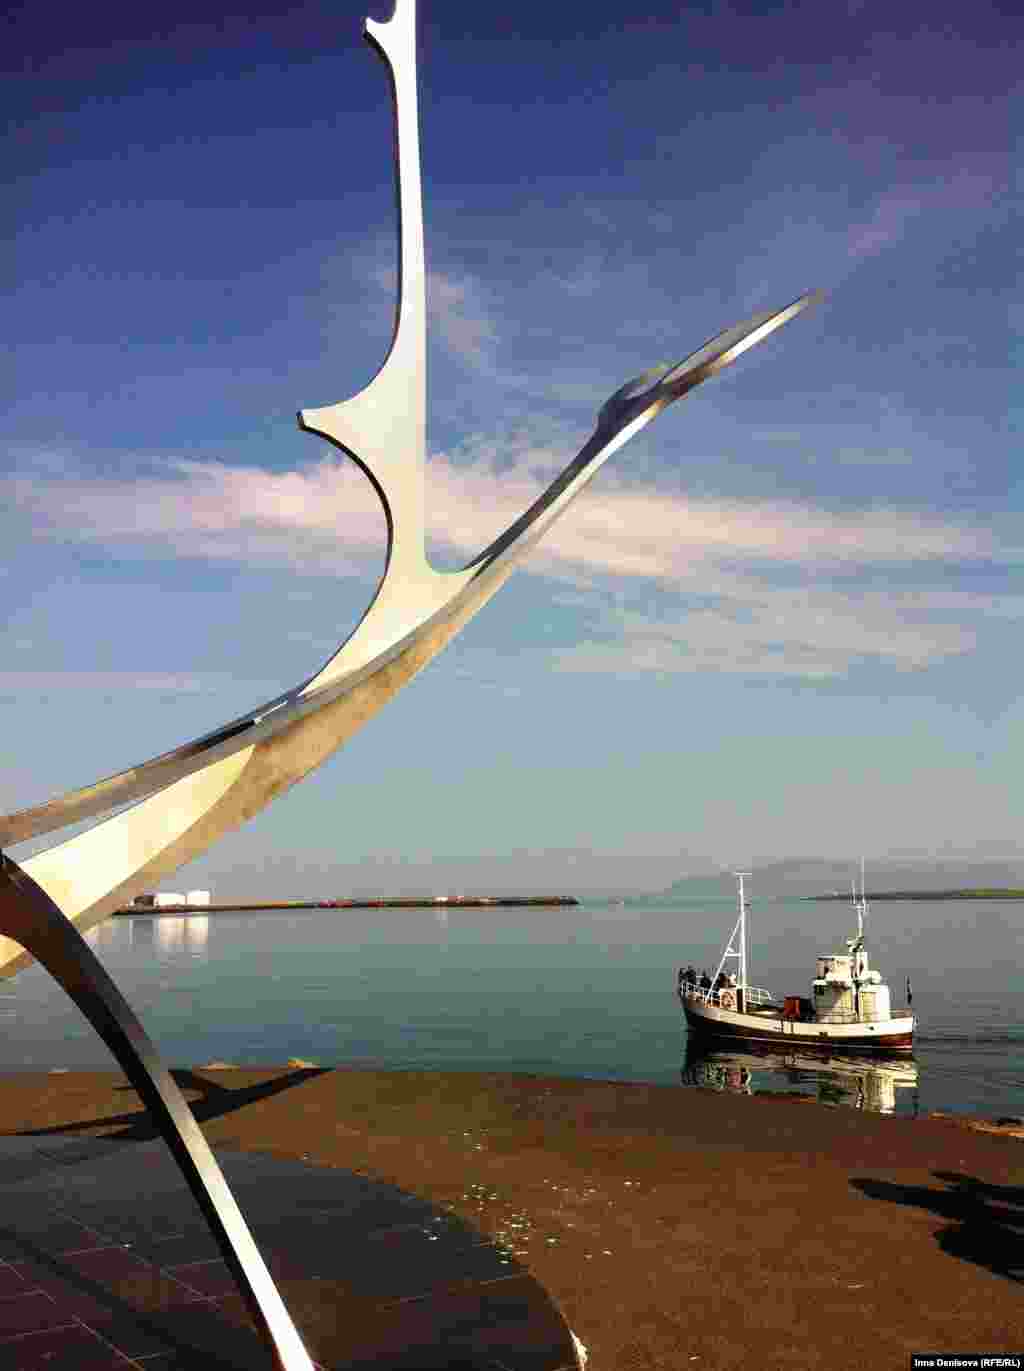 Еще один символ Рейкъявика --Sólfar, &quot;Солнечный странник&quot; &mdash; скульп&shy;тура &nbsp;Йона Гуннара Арнасона на набережной&nbsp;Sæbraut, изображающая лодку викингов, плывущую к солнцу.&nbsp;